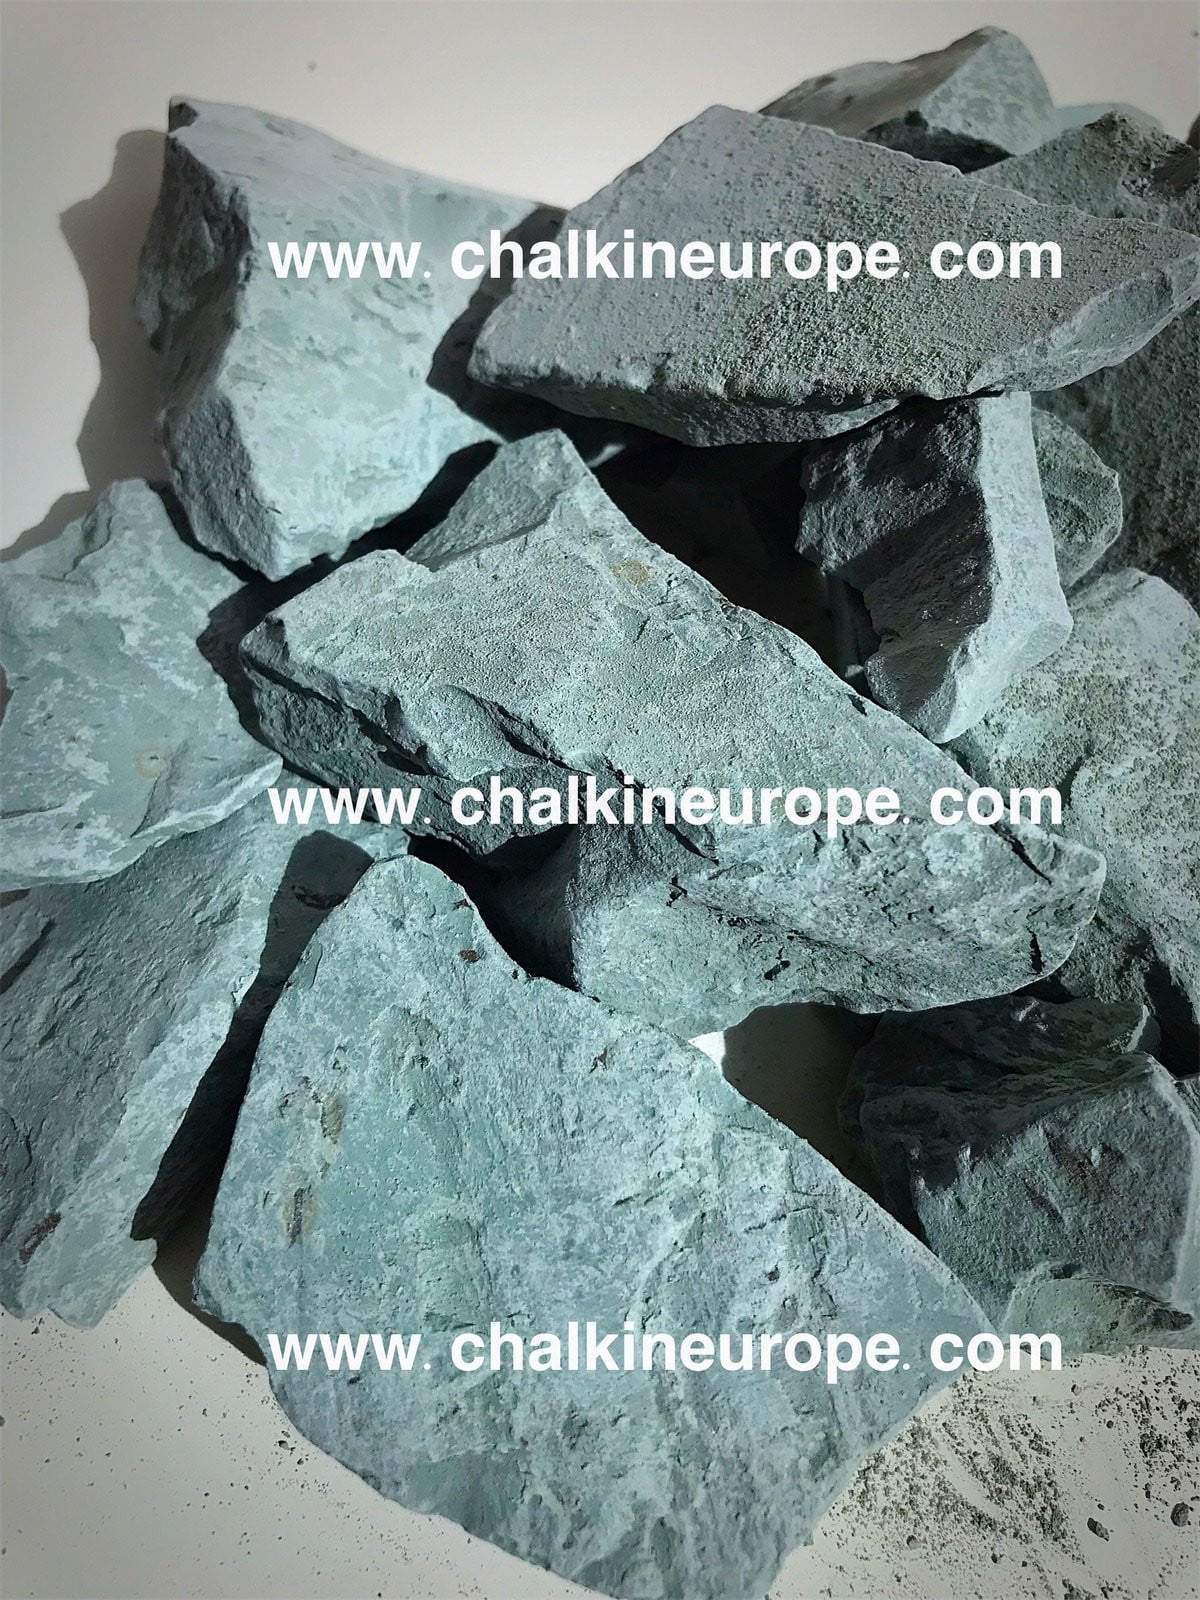 Edible Chalk Blog - Chalkineurope – Tagged Premium edible chalk